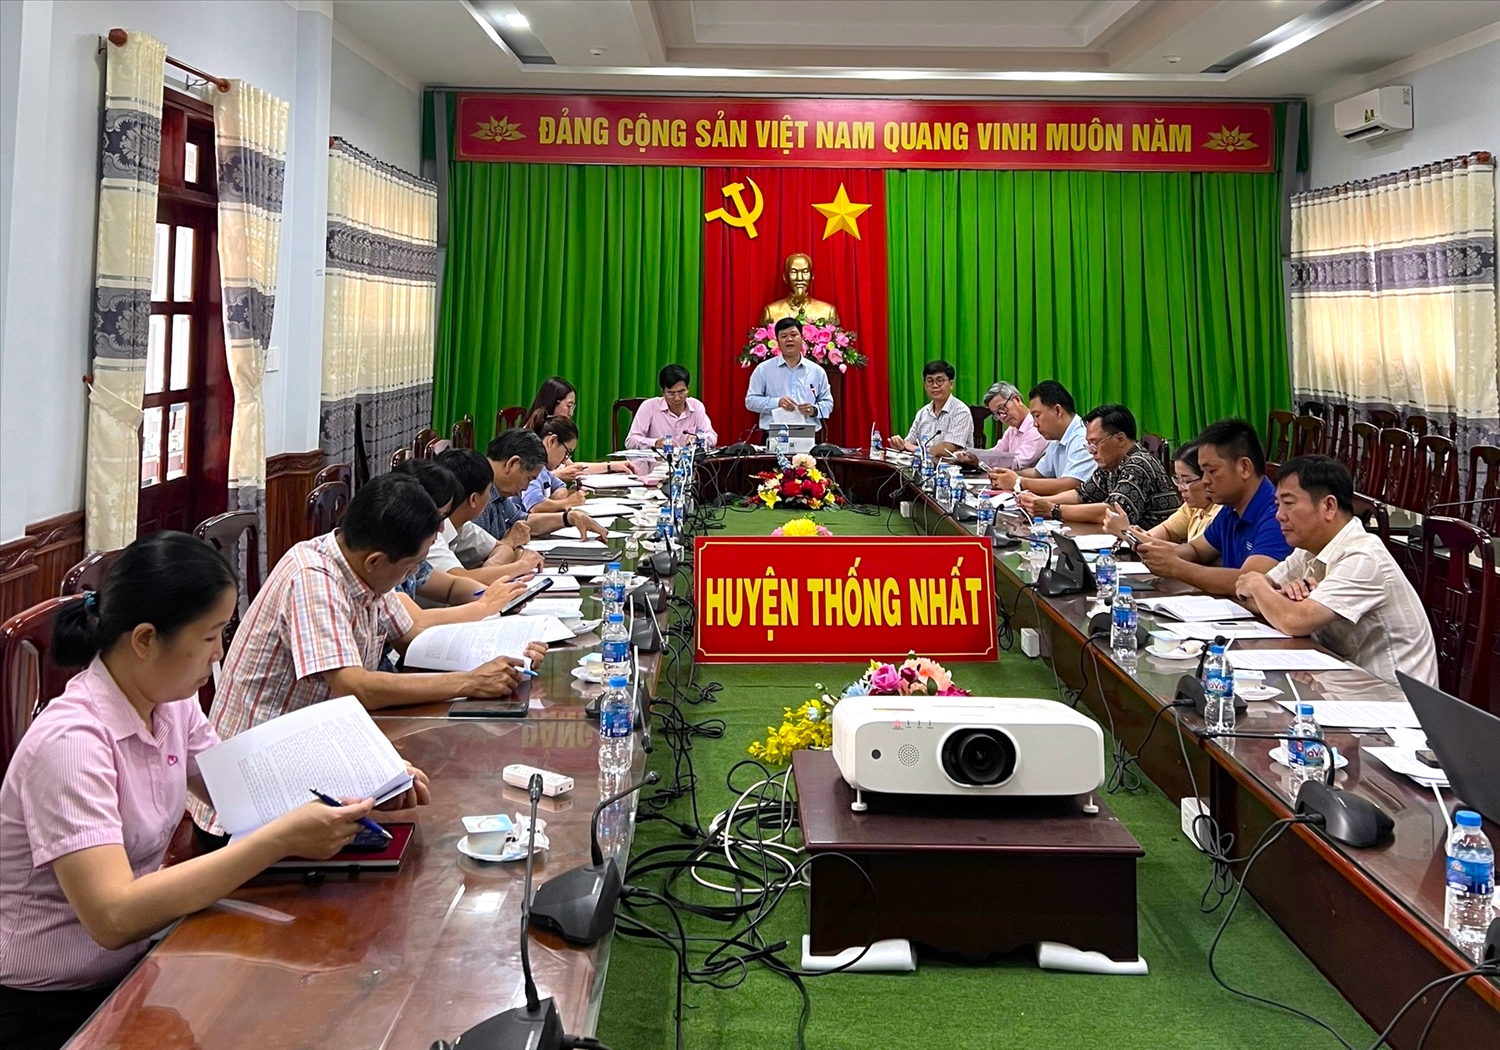 Vừa qua, Ban đại diện Hội đồng quản trị NHCSXH tỉnh Đồng Nai làm việc với Ban đại diện Hội đồng quản trị NHCSXH huyện Thống Nhất về thực hiện Chỉ thị 40.